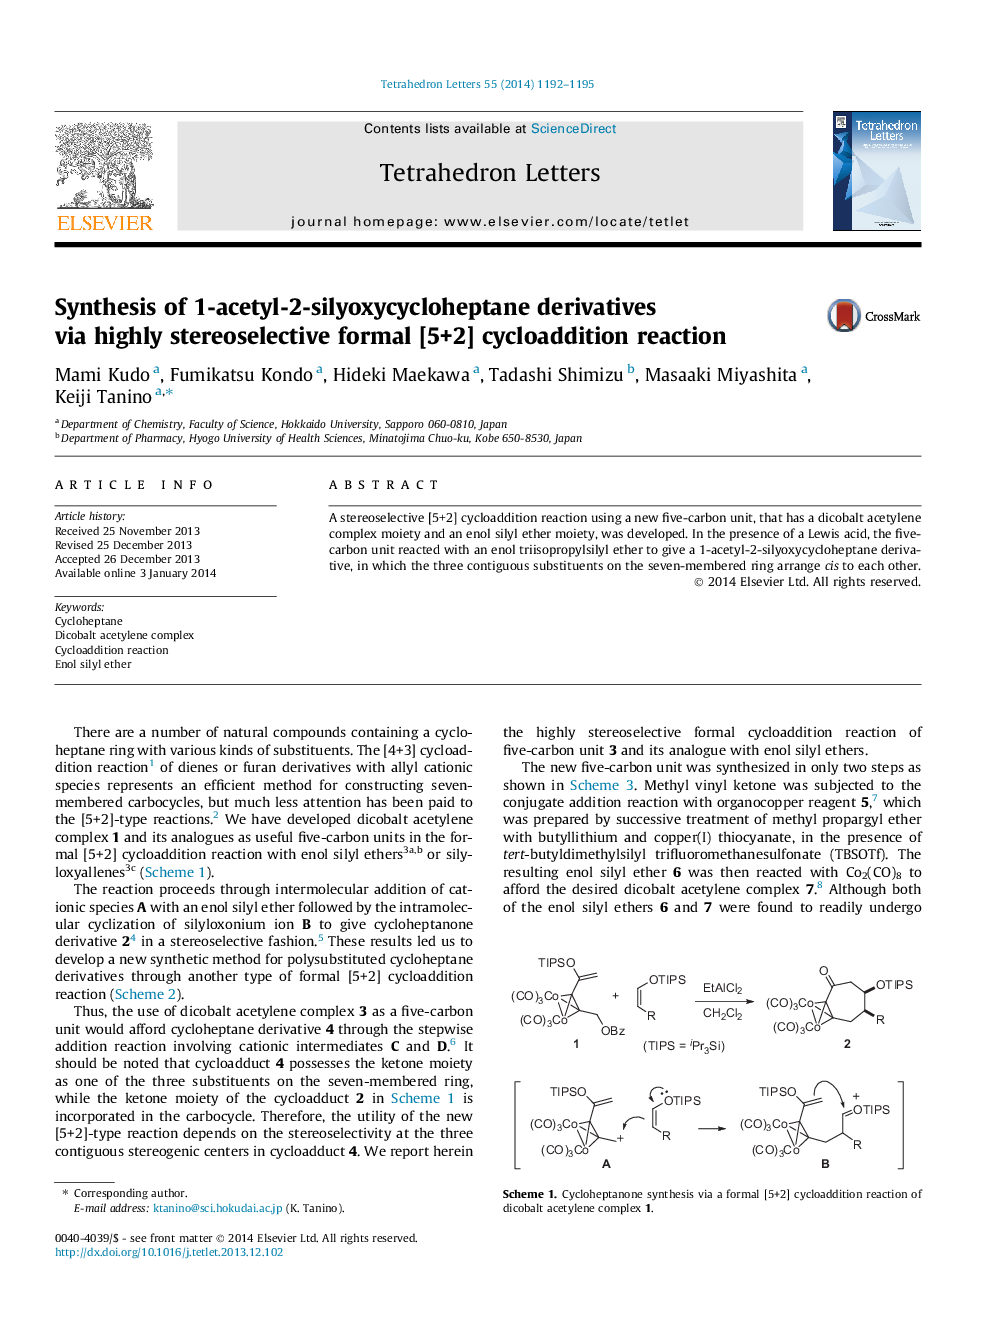 سنتز مشتقات 1-استیل-2-سیلویکسسی سیلوهپتان به وسیله واکنش سیکل جاذب رسمی [5 + 2] 